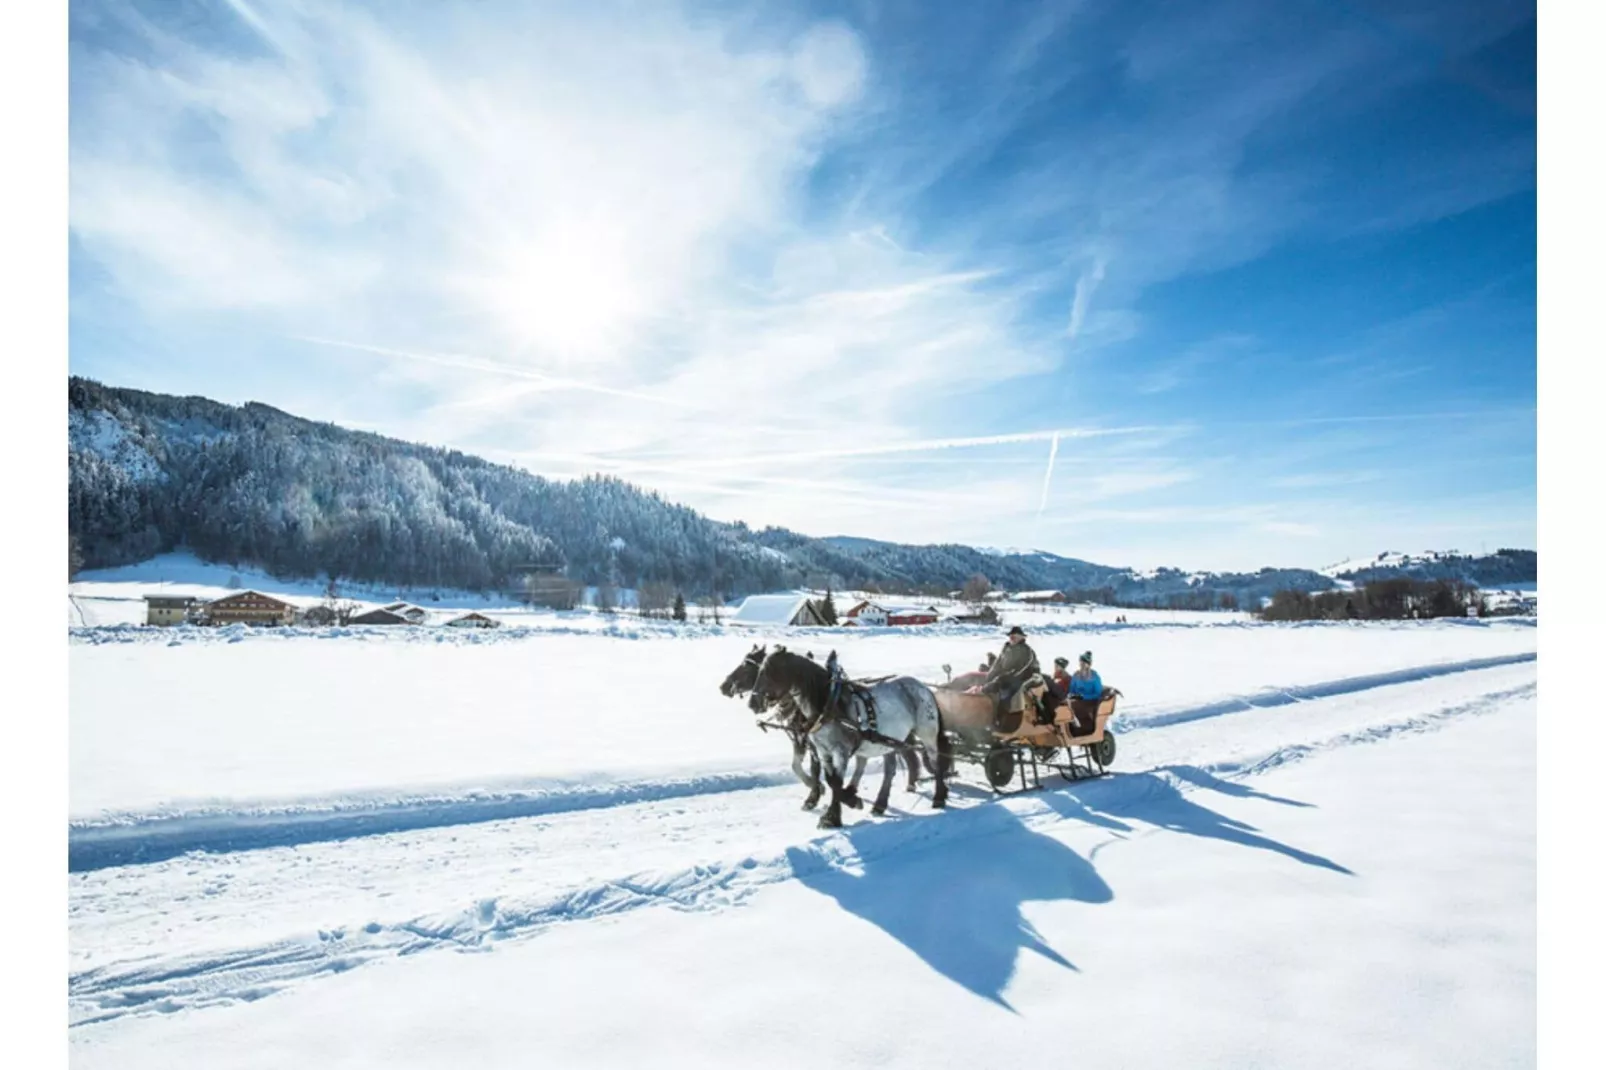 Hubergut - Ferienwohnung Anna 01-Gebied winter 1km